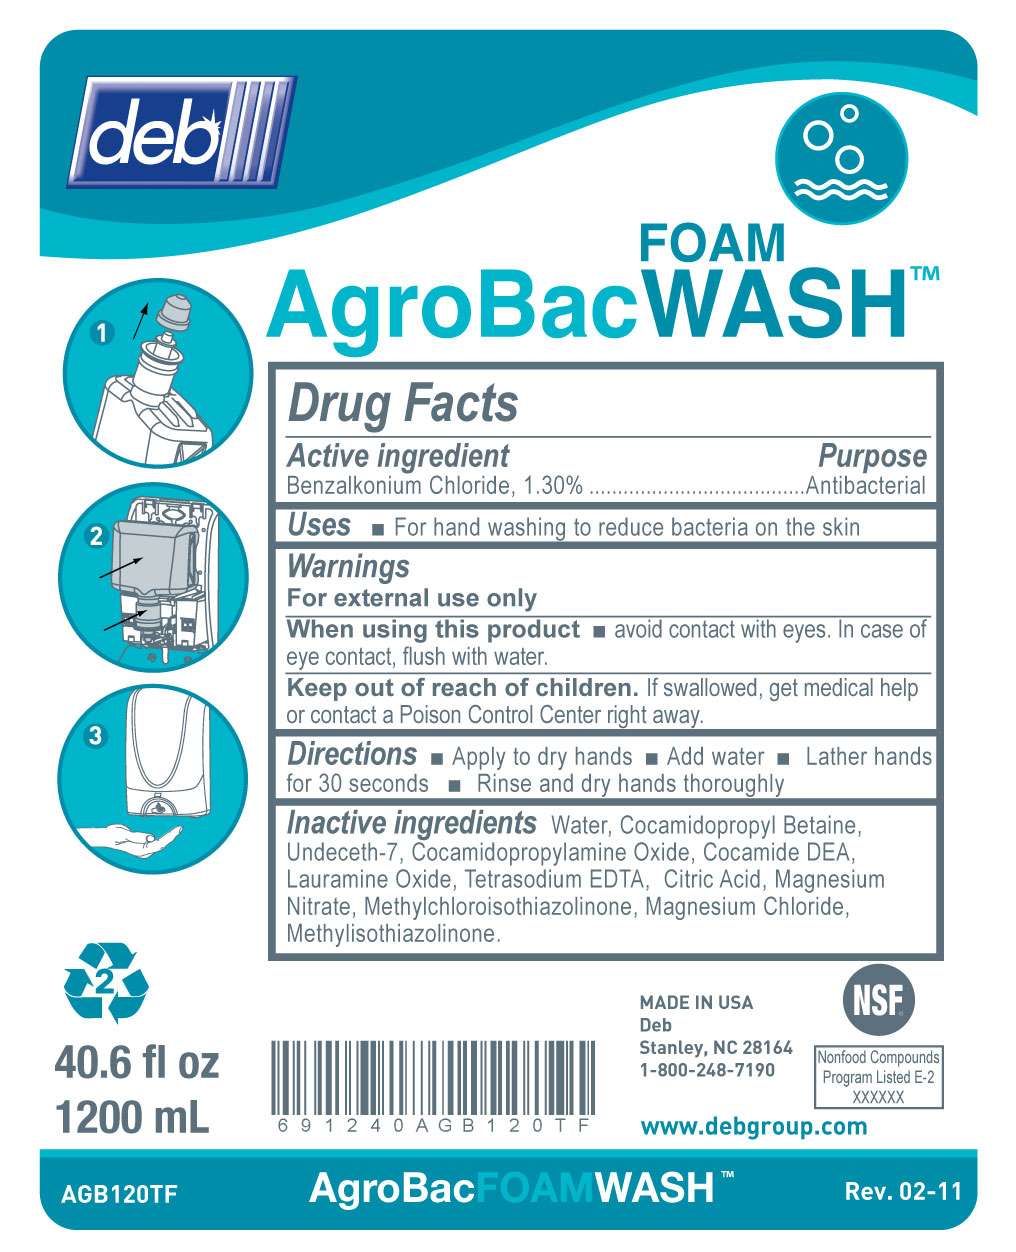 AgroBac Foam Wash